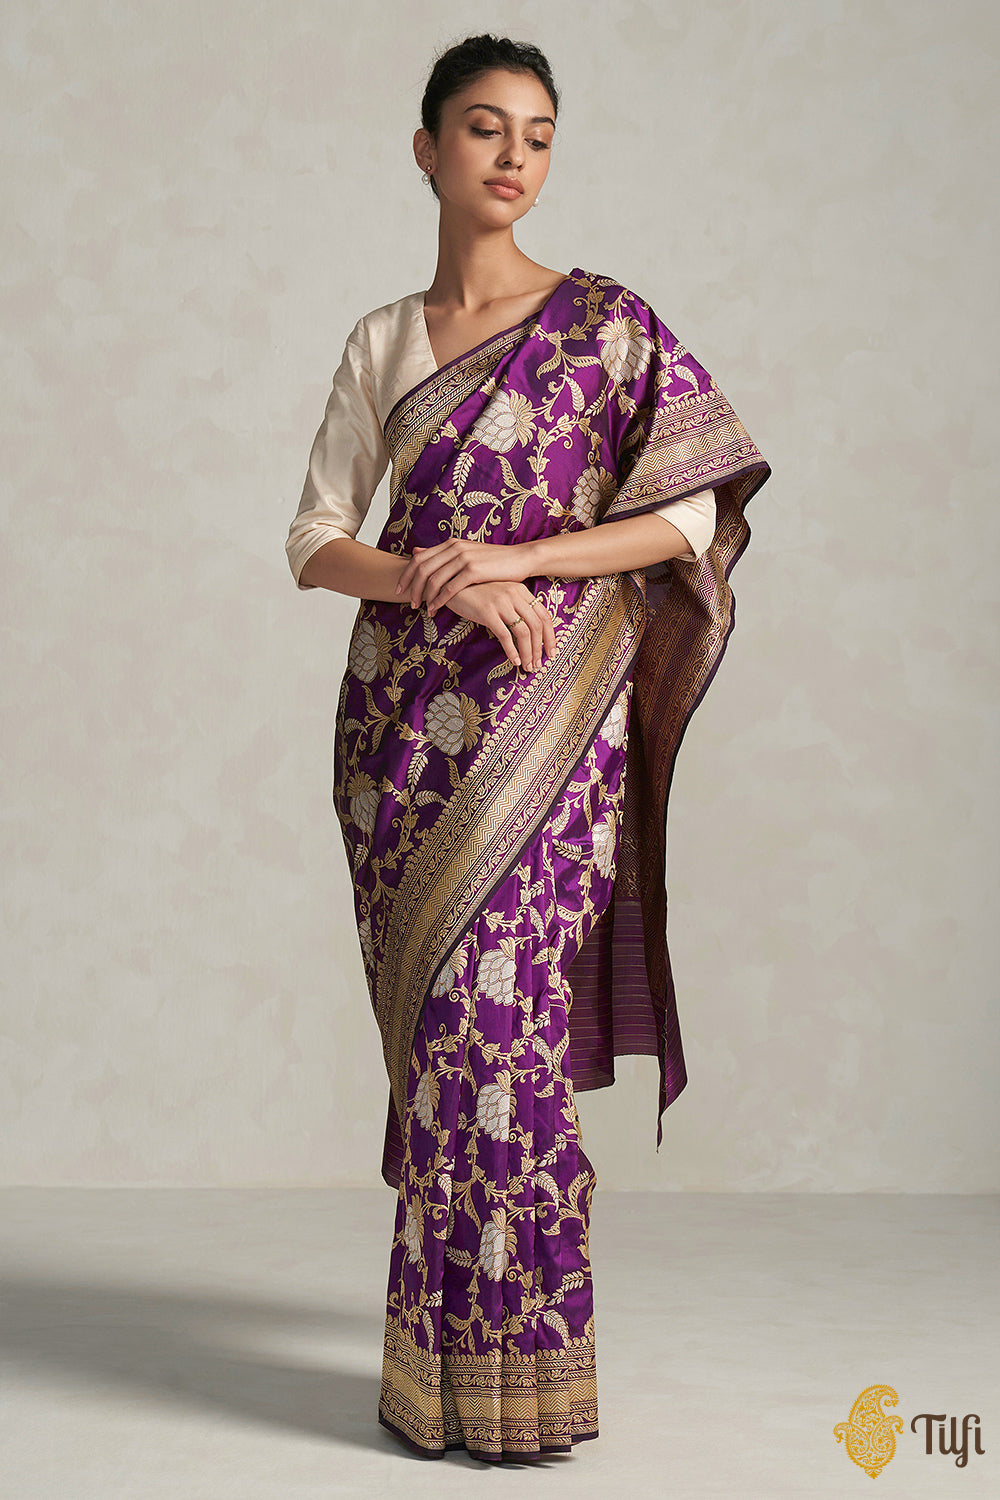 Top more than 153 dark purple banarasi saree